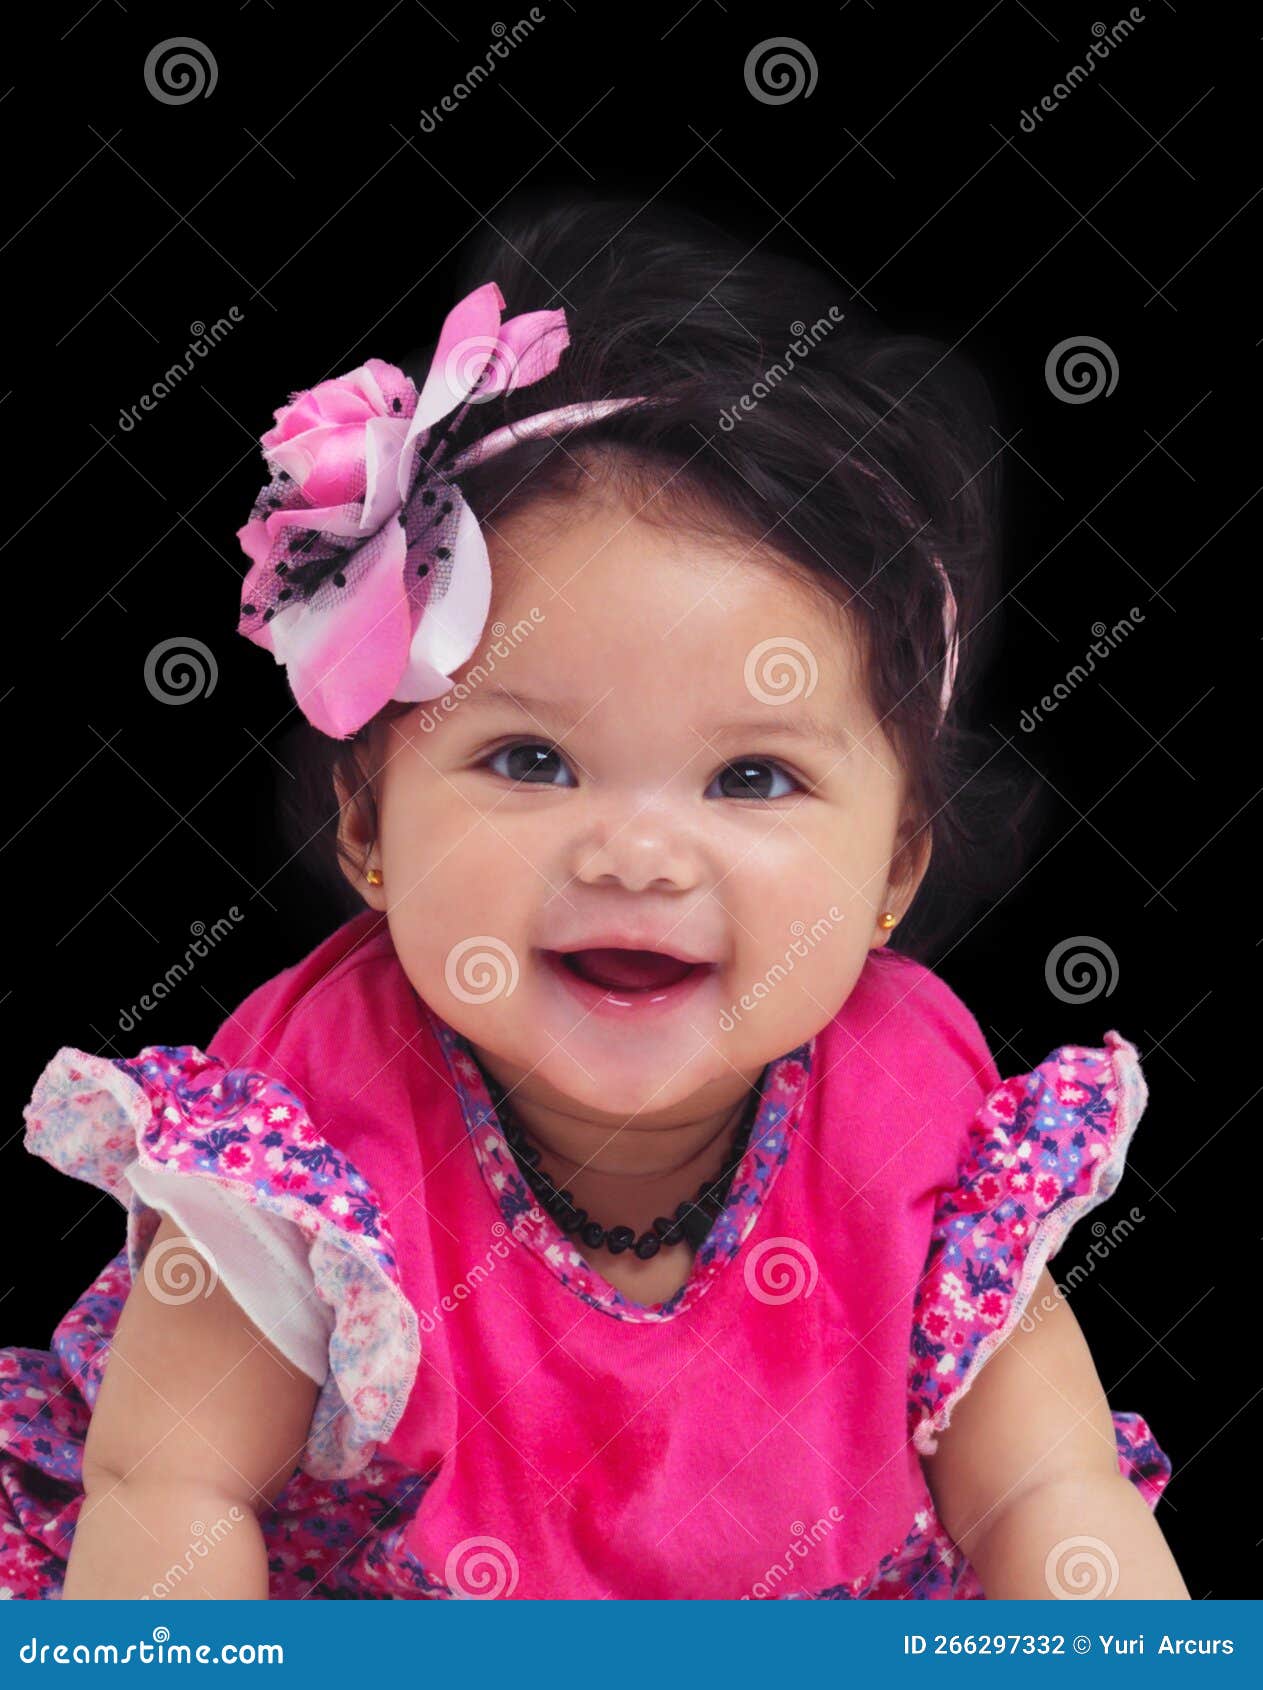 De Bebé Y Niña Con Un Recién Nacido En Un Estudio Fondo Negro Con Ropa De Flores. Flor Infantil Y Foto de archivo - Imagen de desarrollo, bebé: 266297332